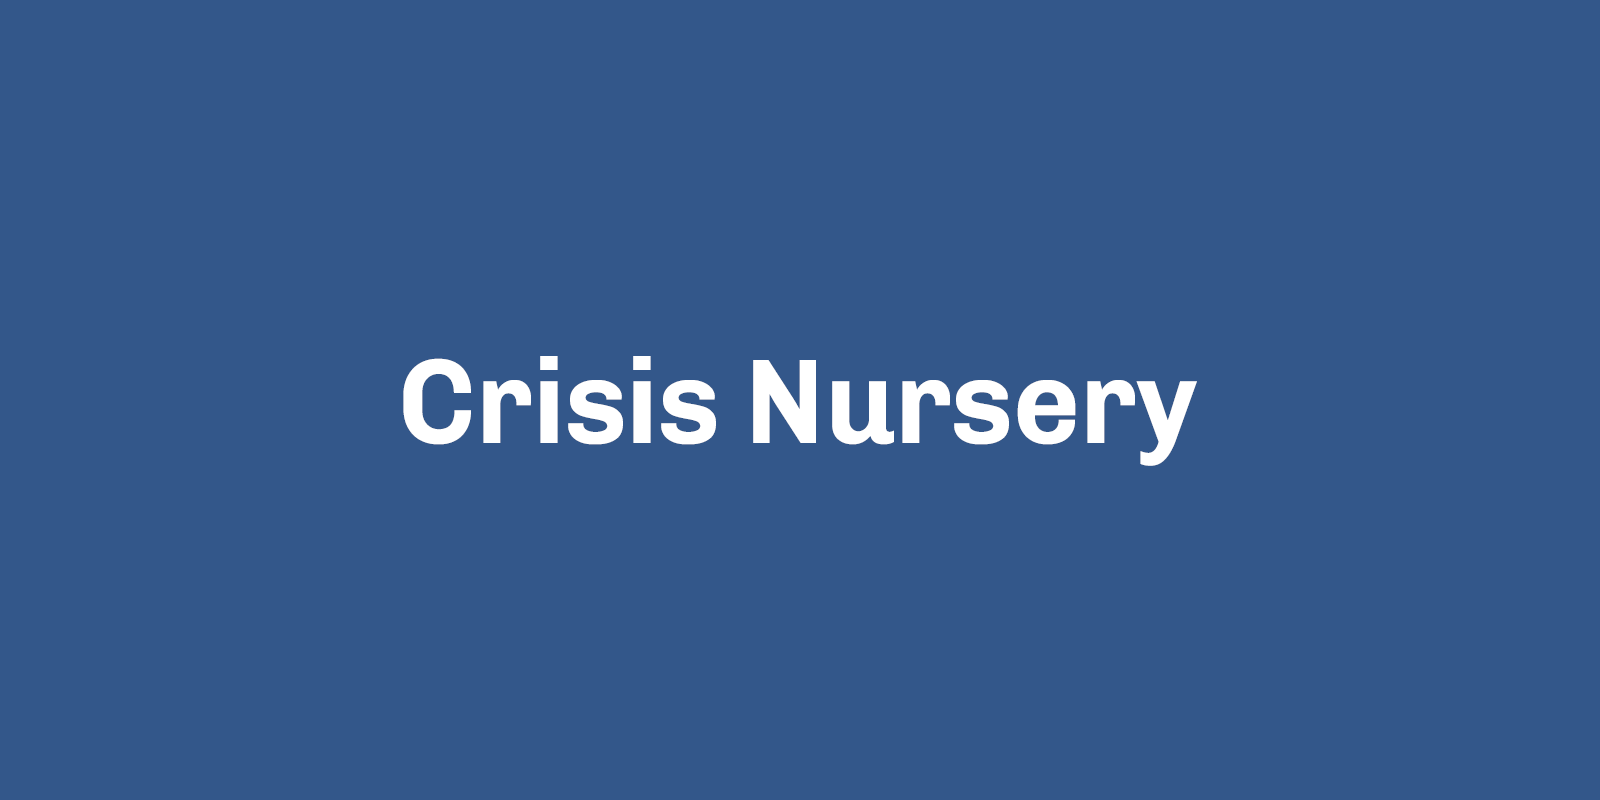 Crisis Nursery